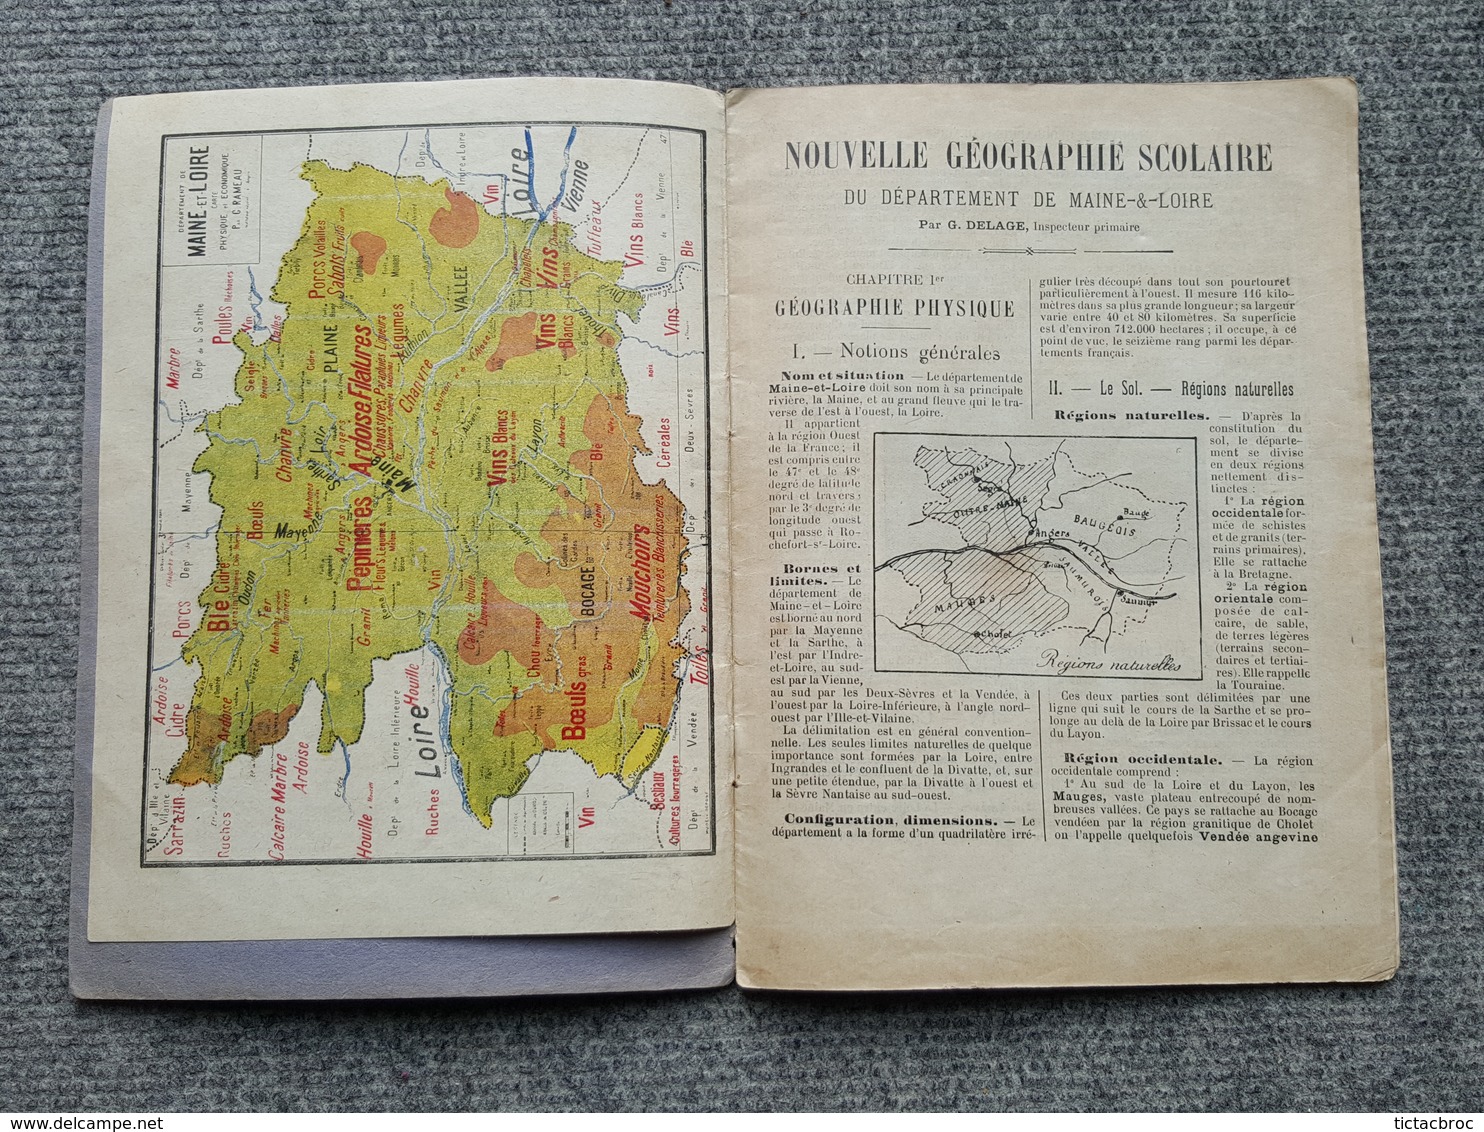 Livre Nouvelle Géographie Scolaire Maine Et Loire Histoire Abrégée De L'Anjou - Pays De Loire